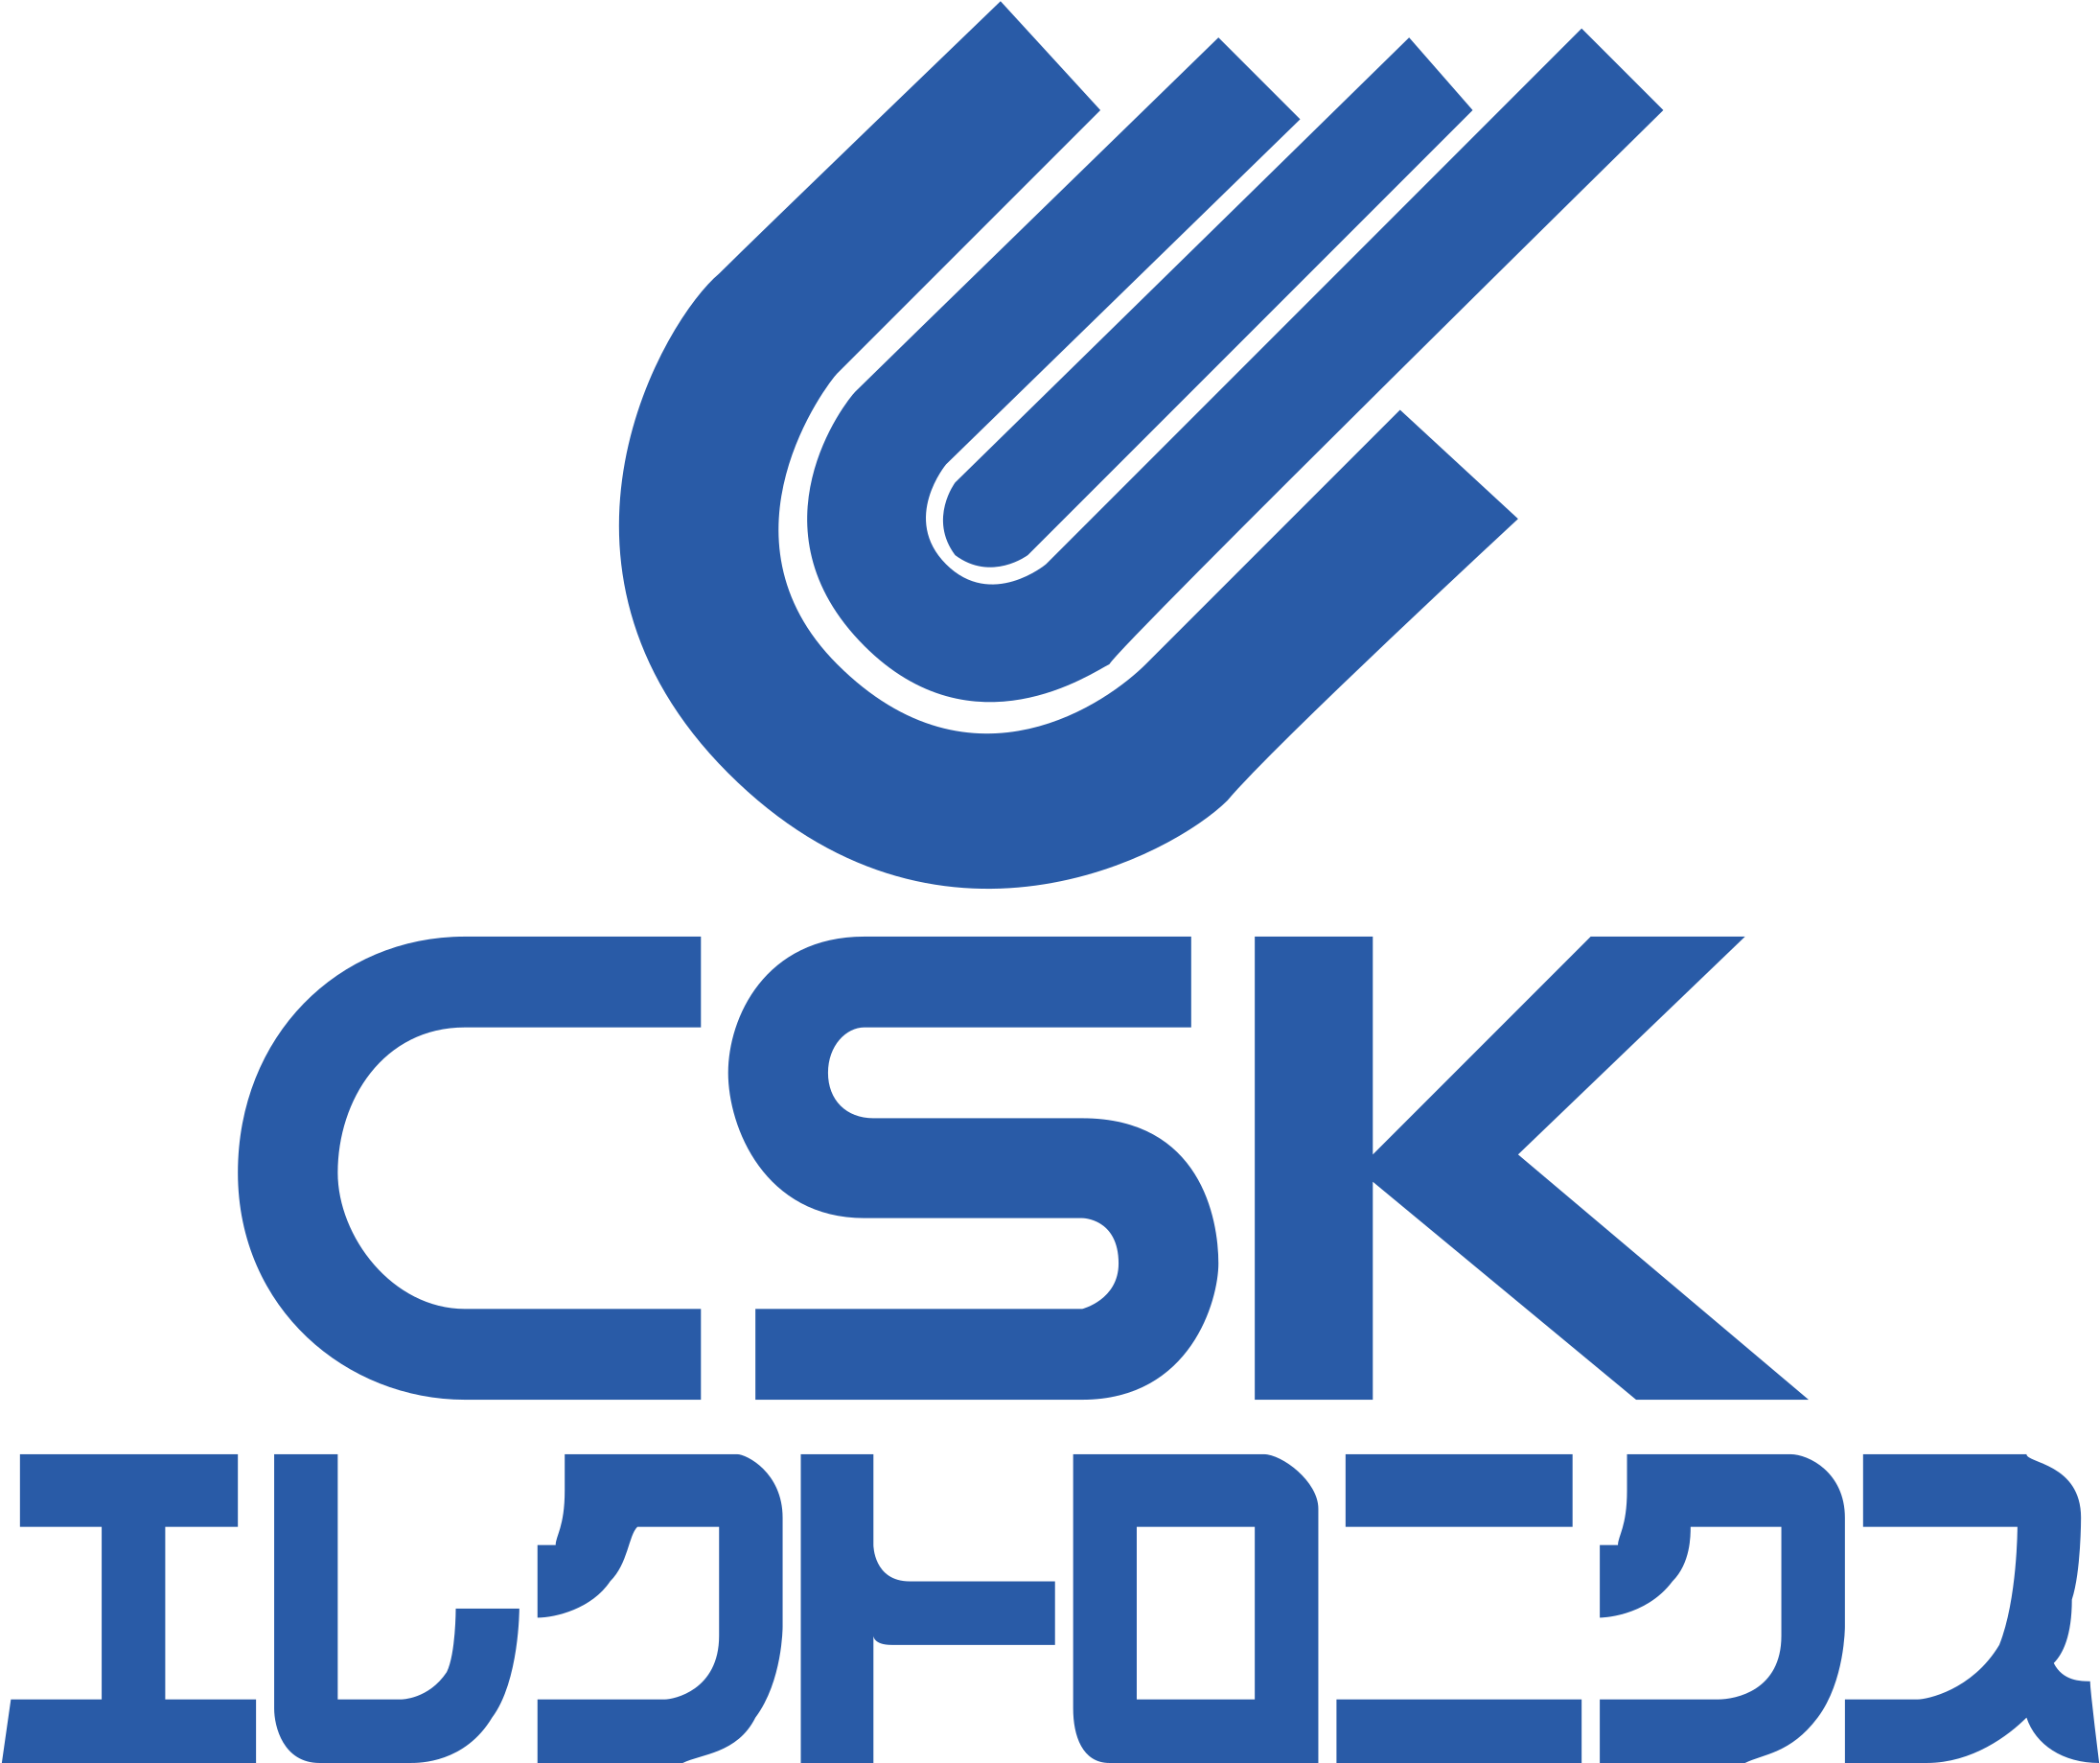 Csk Electronics Logo Png Transparent - Electronics (2400x2400), Png Download